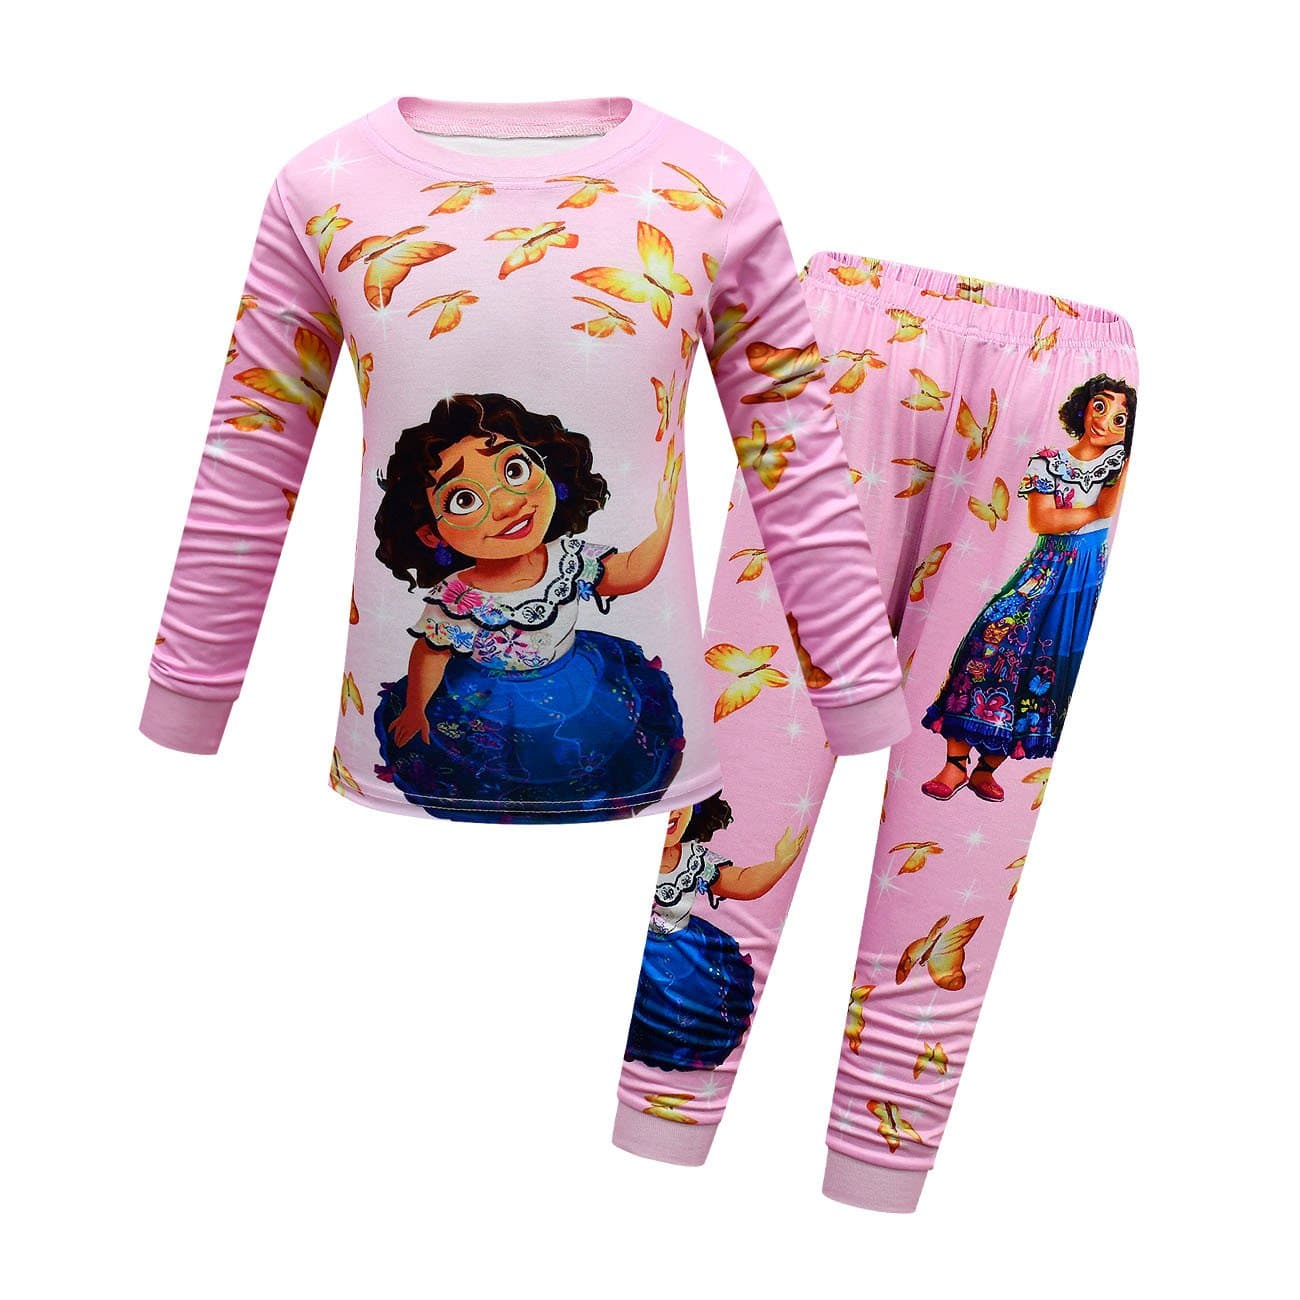 Encanto Pajama Kids Long Sleeve Two Pieces Pajama - Pink